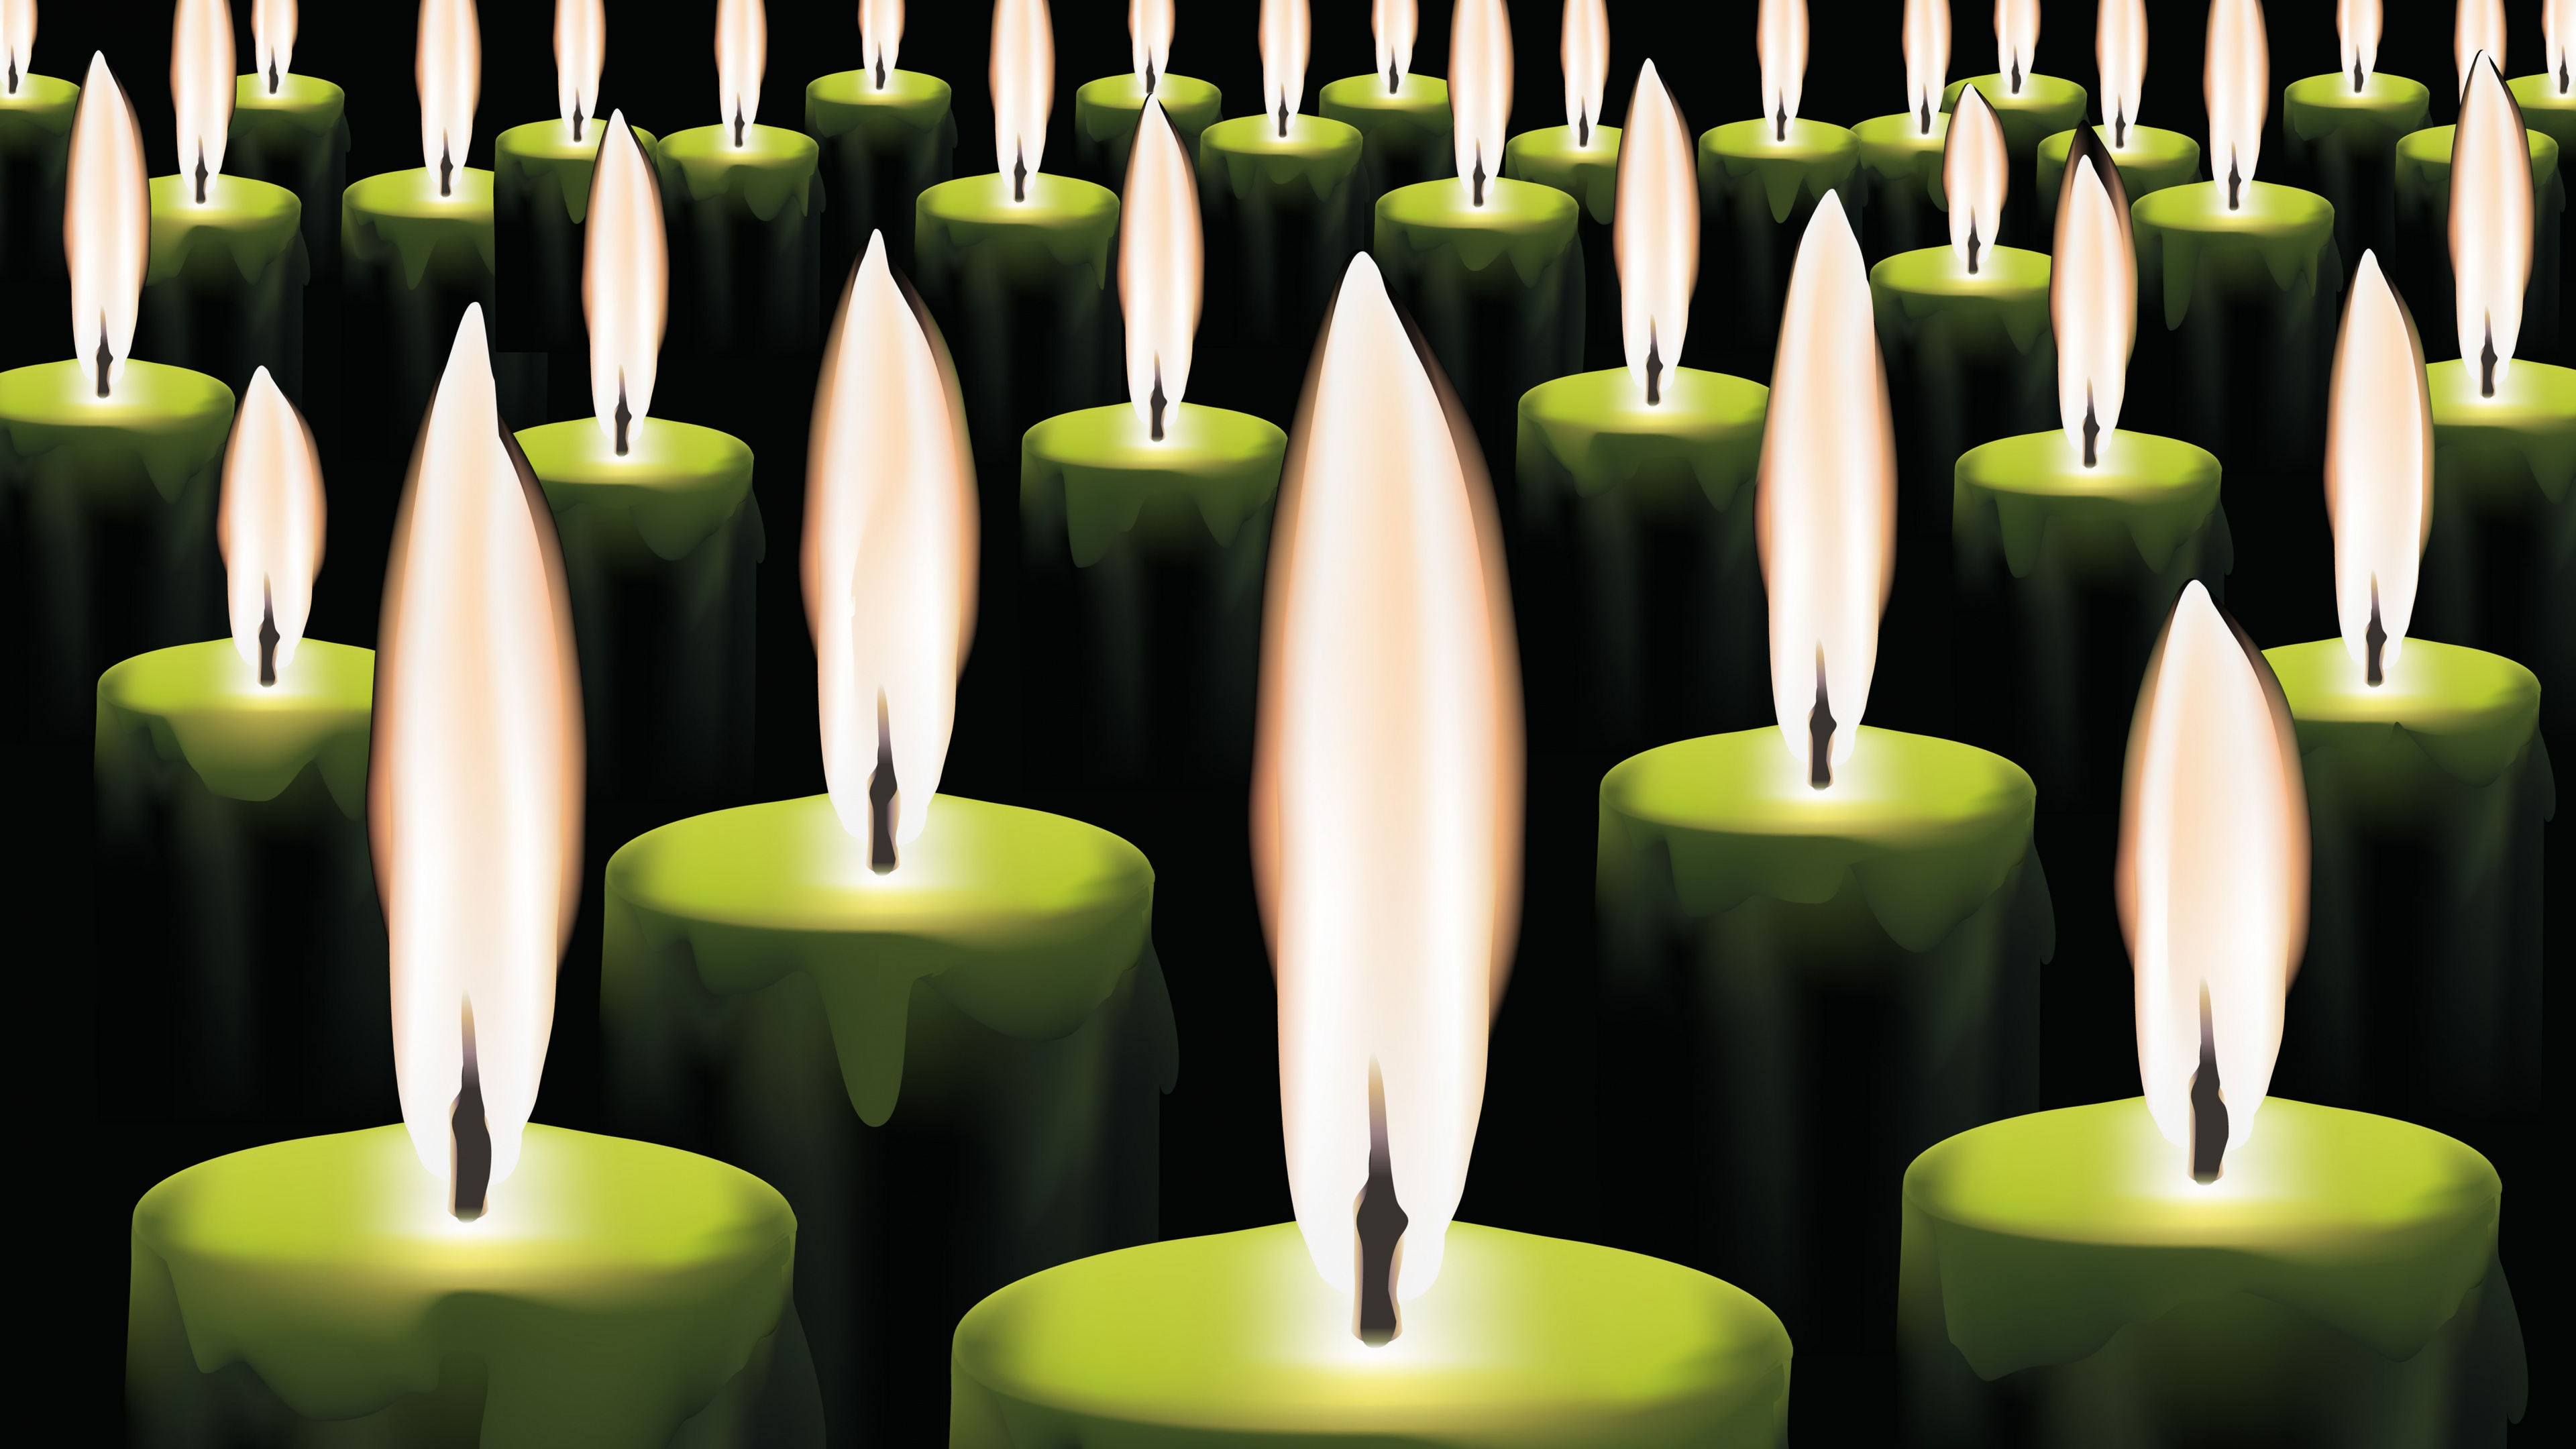 Brennende Kerzen, Kerze, Flamme, Licht, Wachs. Wallpaper in 3840x2160 Resolution